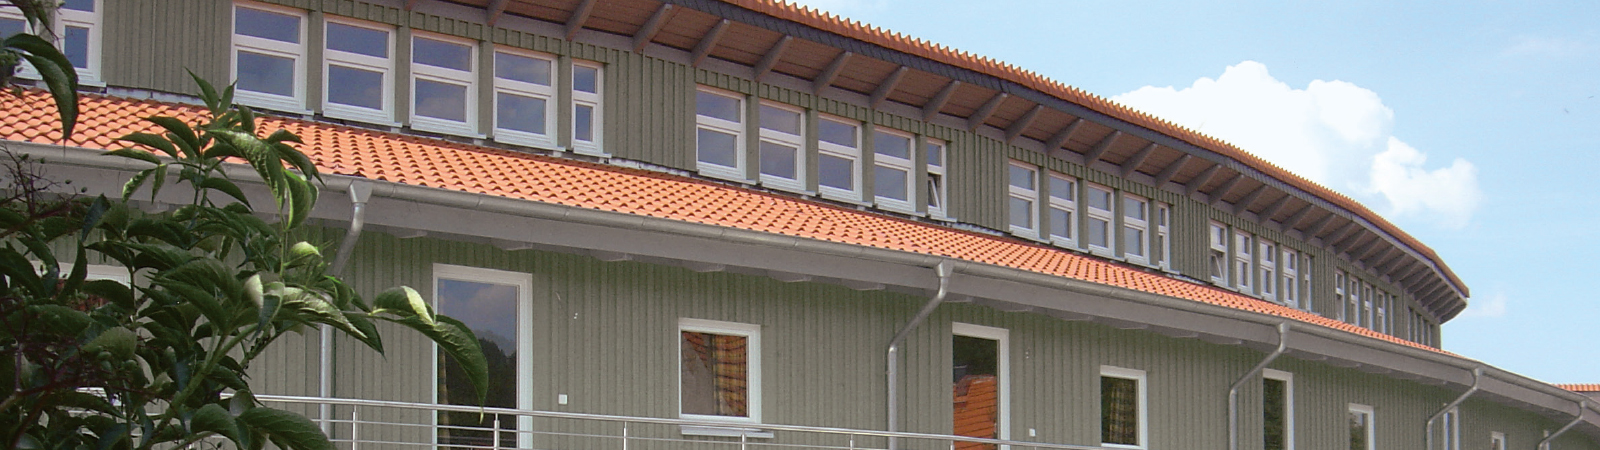 Osmo Beschichtungssysteme für Holzfassaden am Haus außen – industrielle Holzbeschichtungen